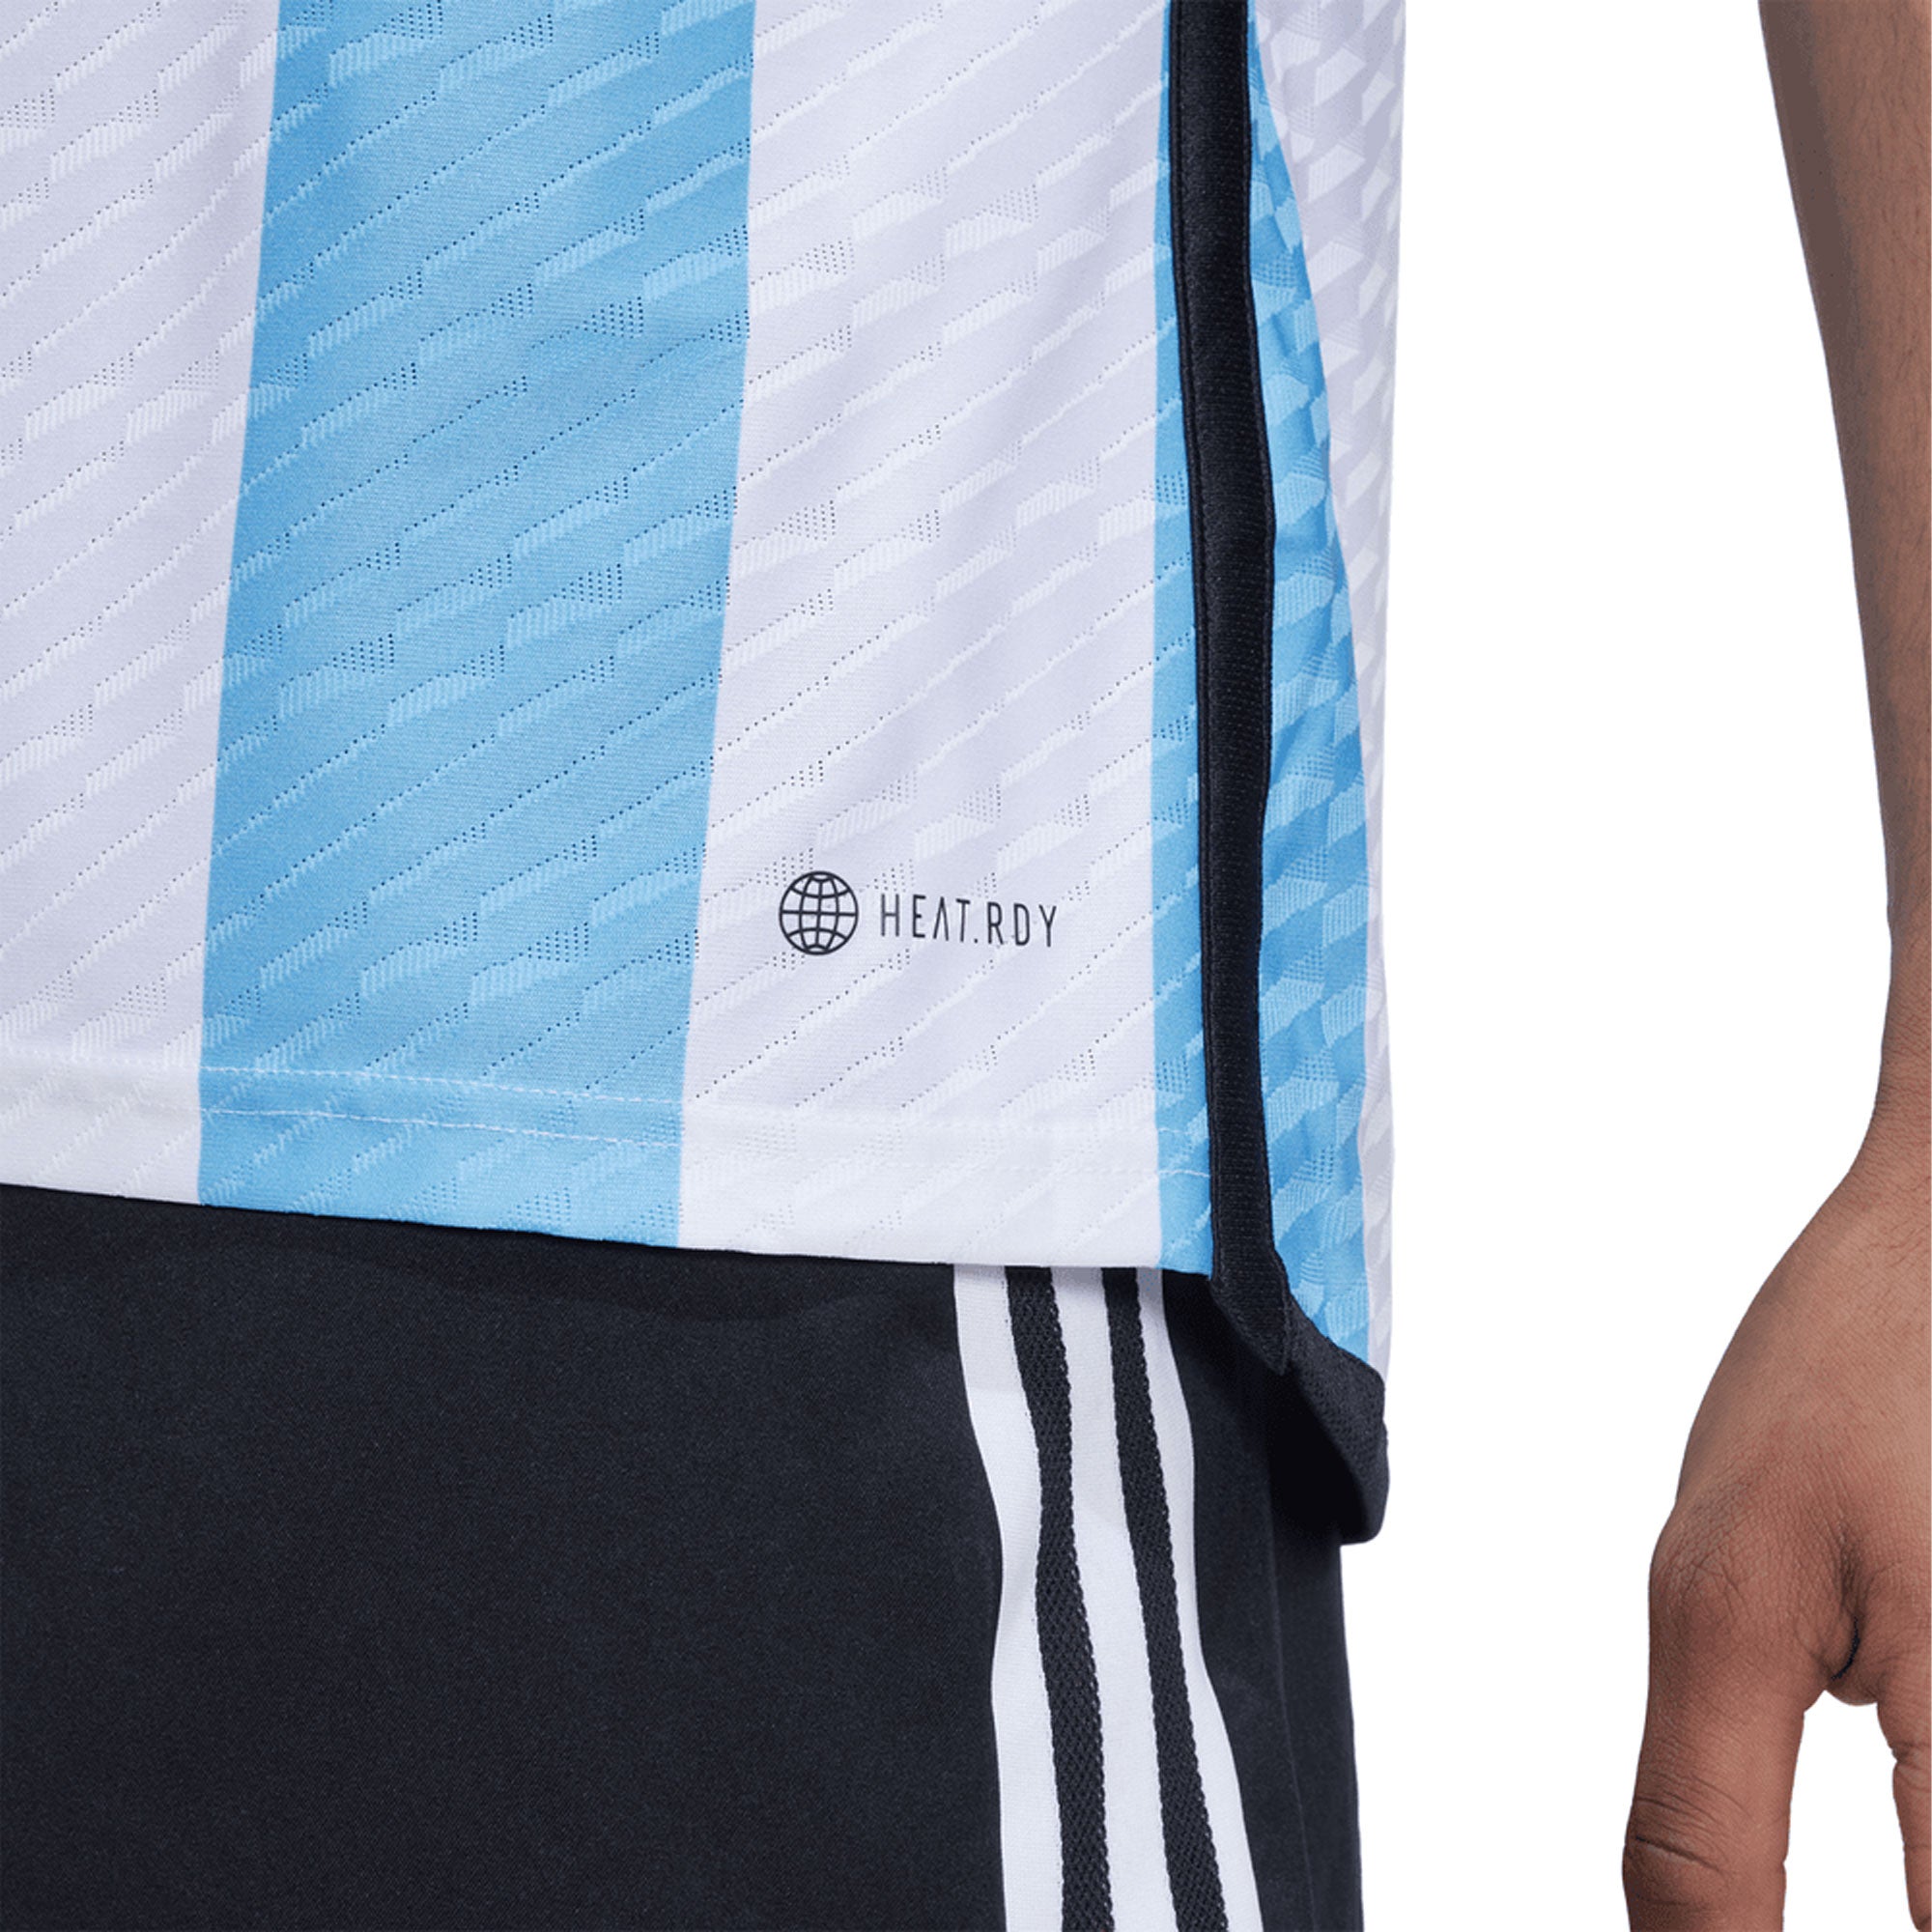 adidas Kids Argentina 14/15 Home Jersey White/Zenith – Azteca Soccer